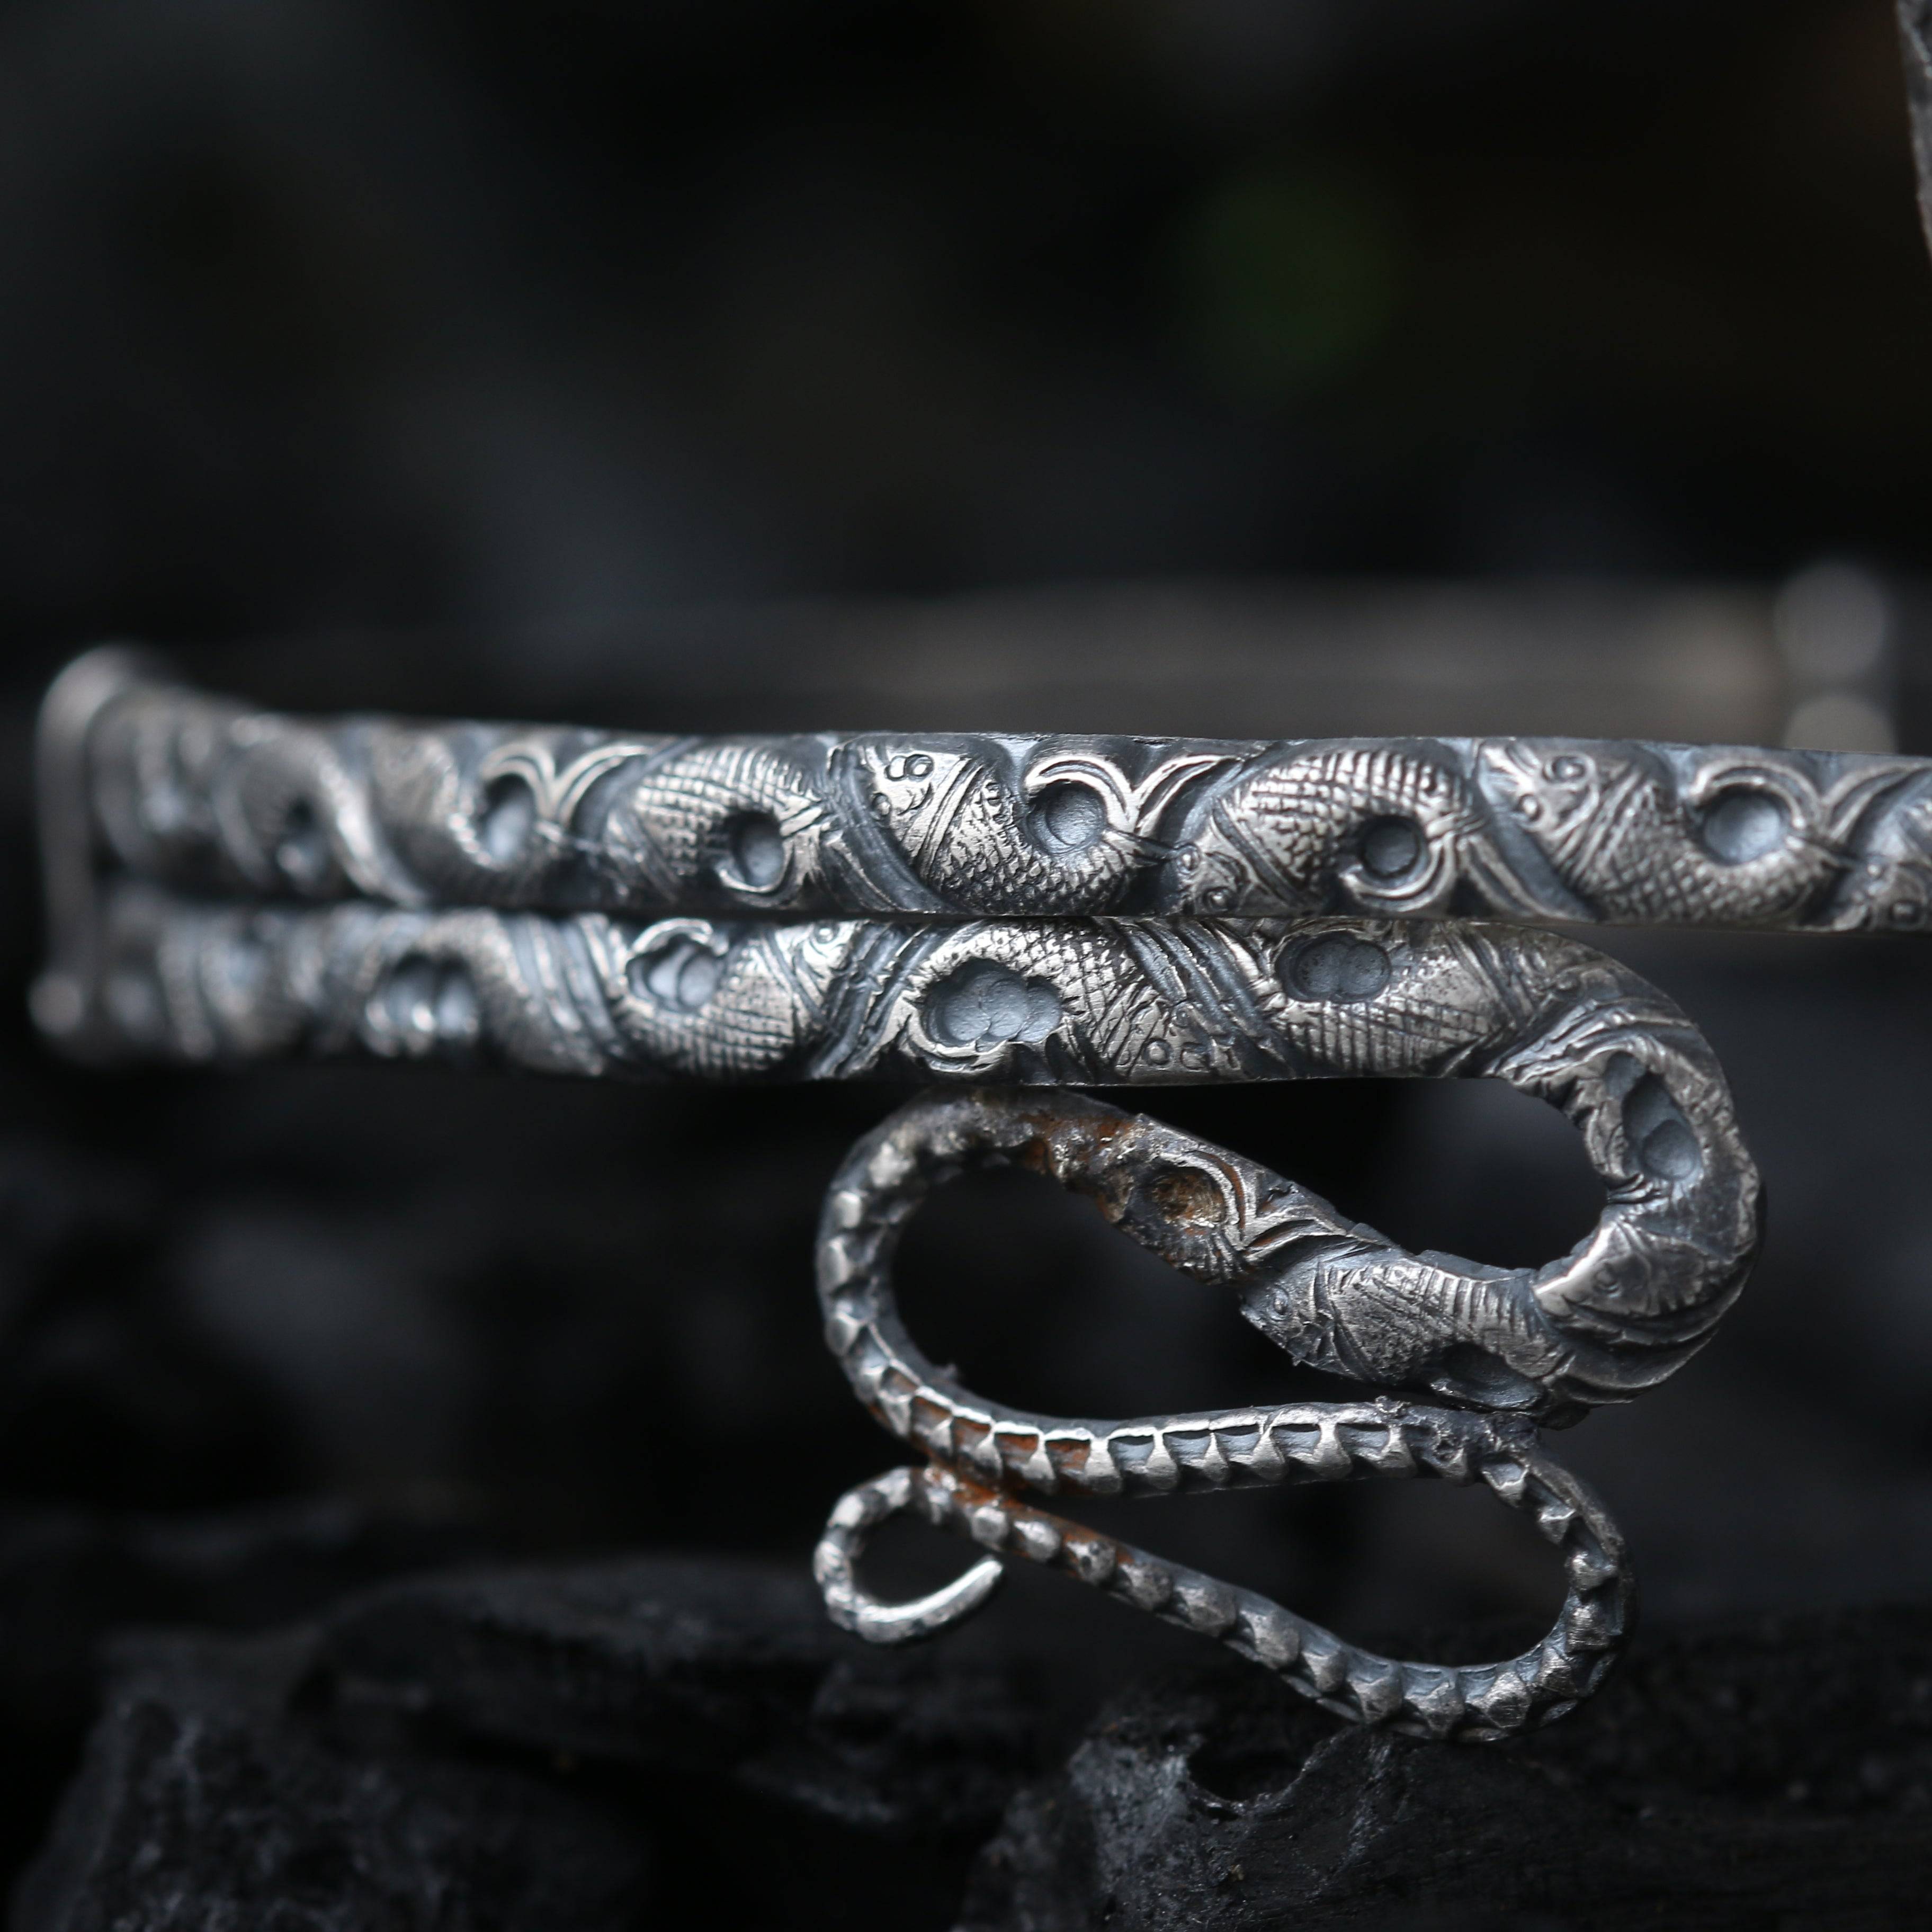 a close up of a silver bracelet on a rock